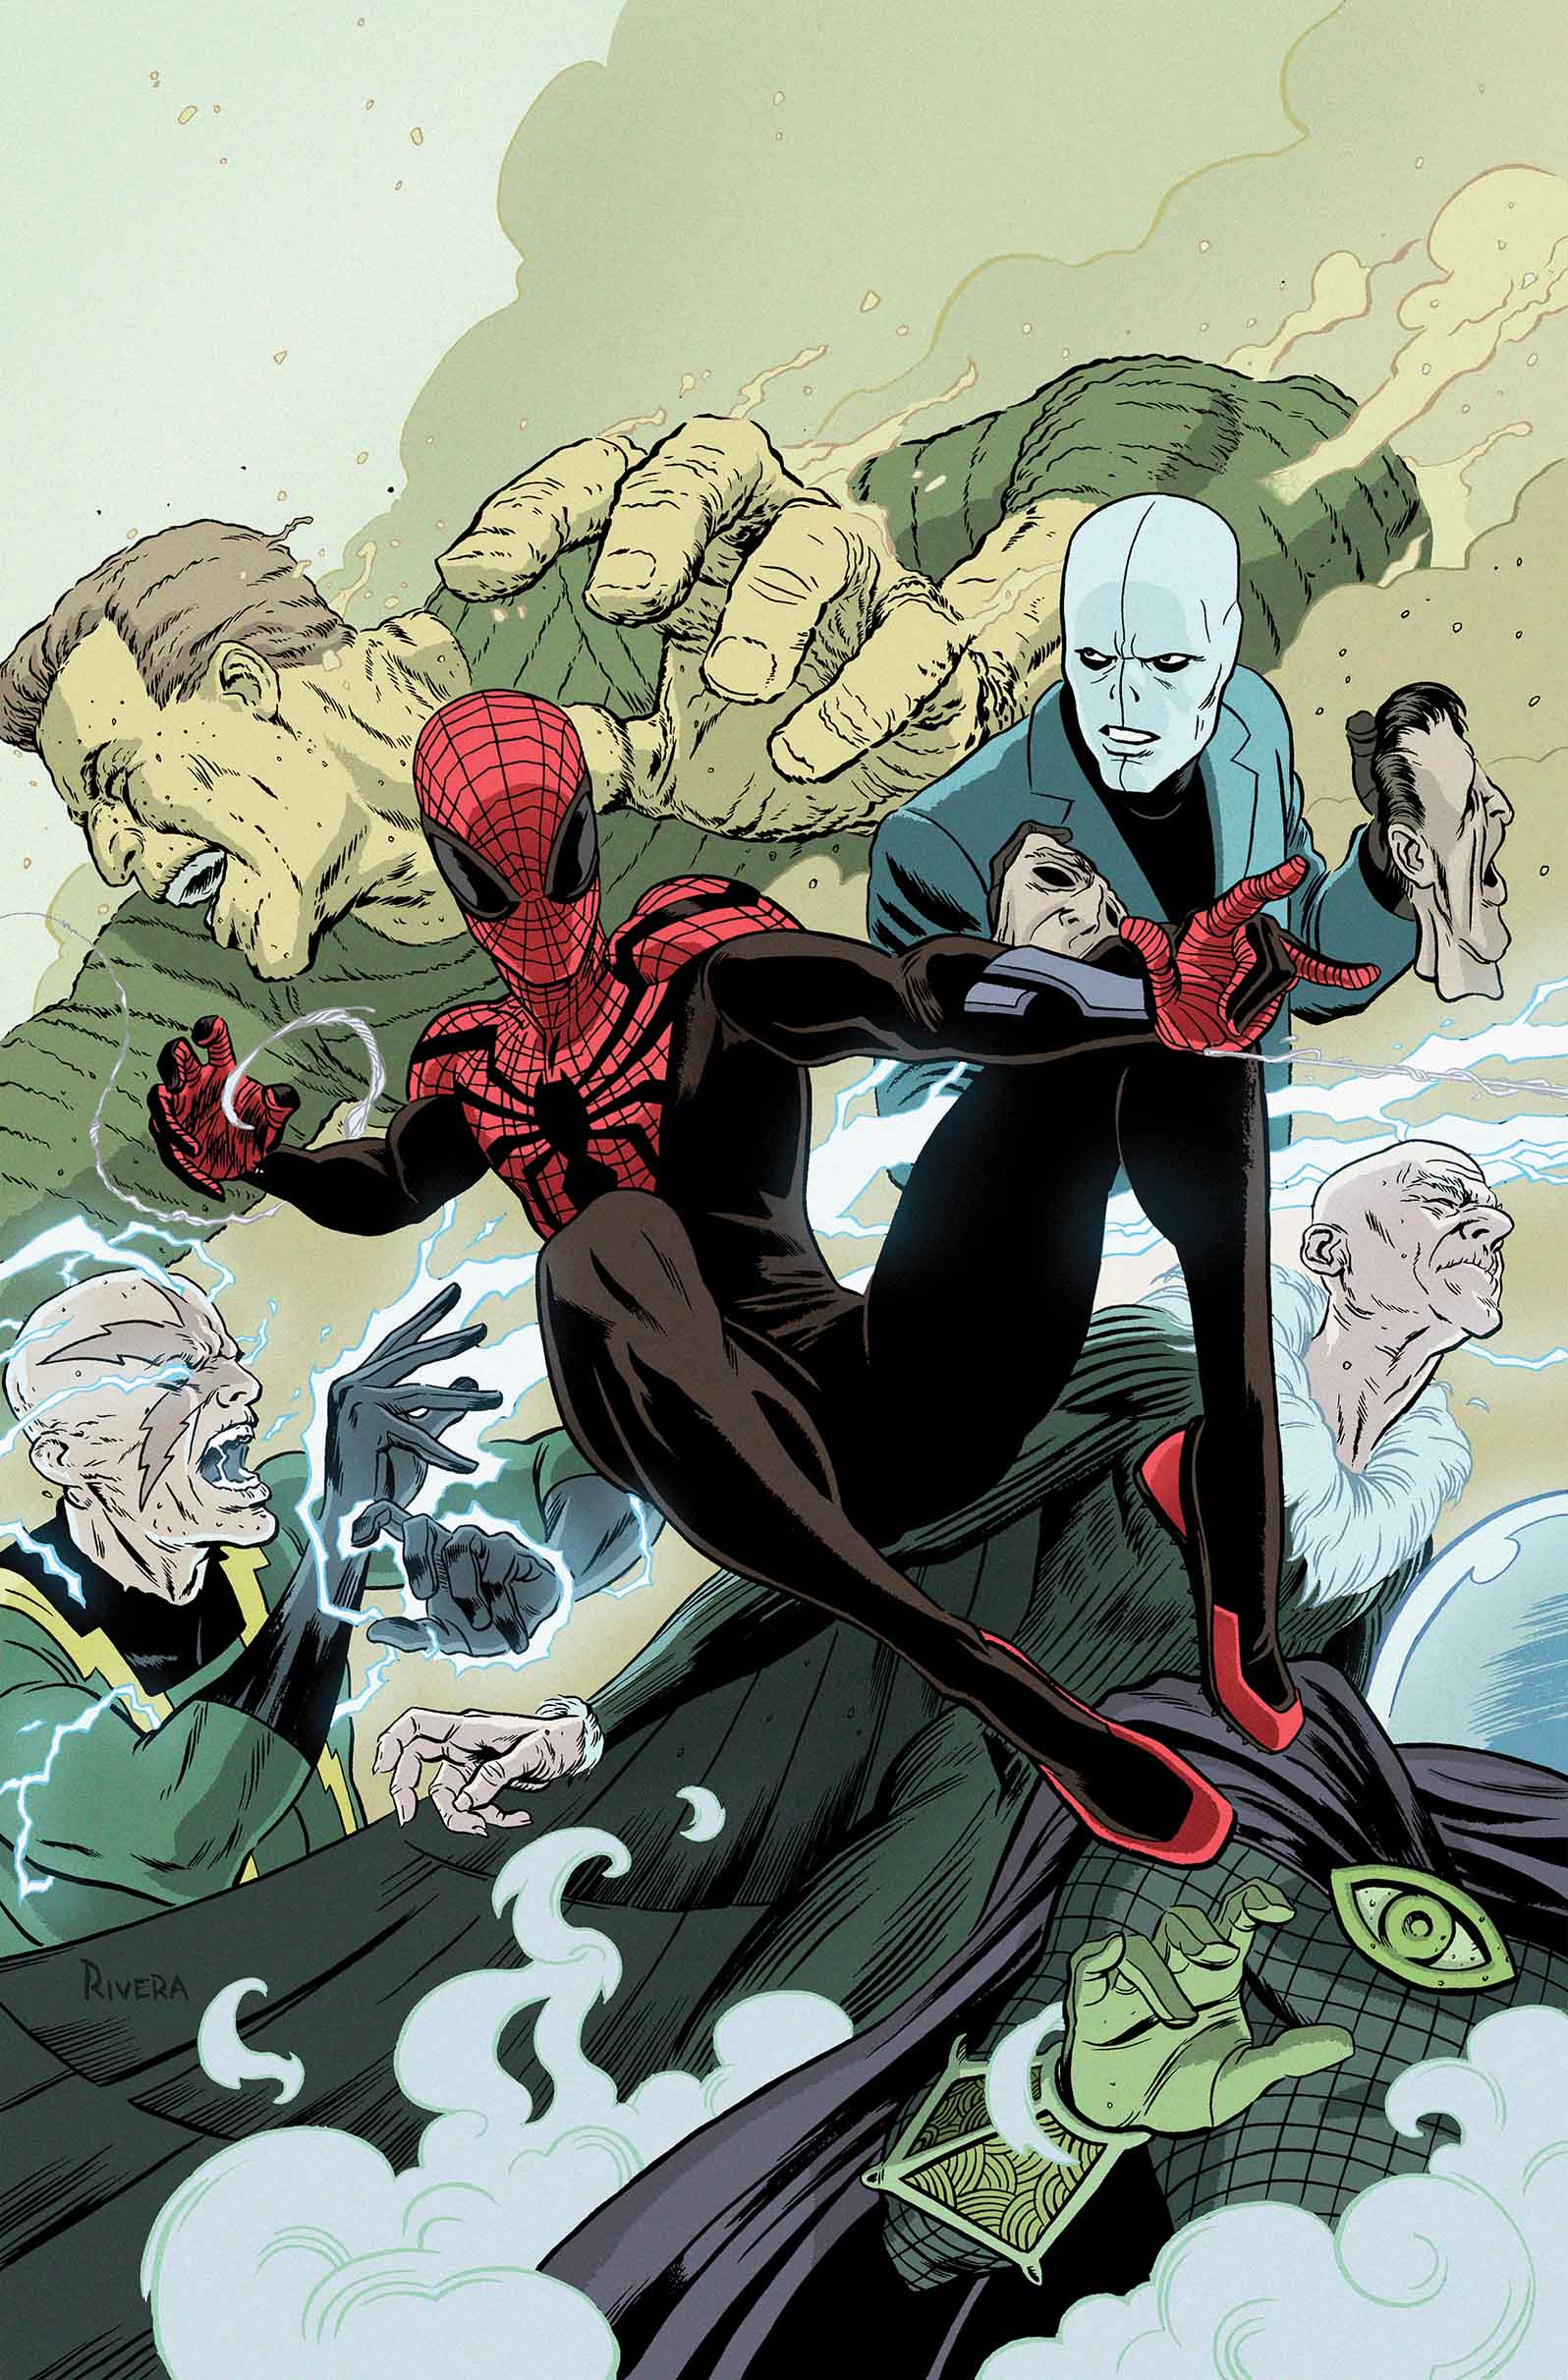 Superior Spider-Man Team-Up (2013) #7